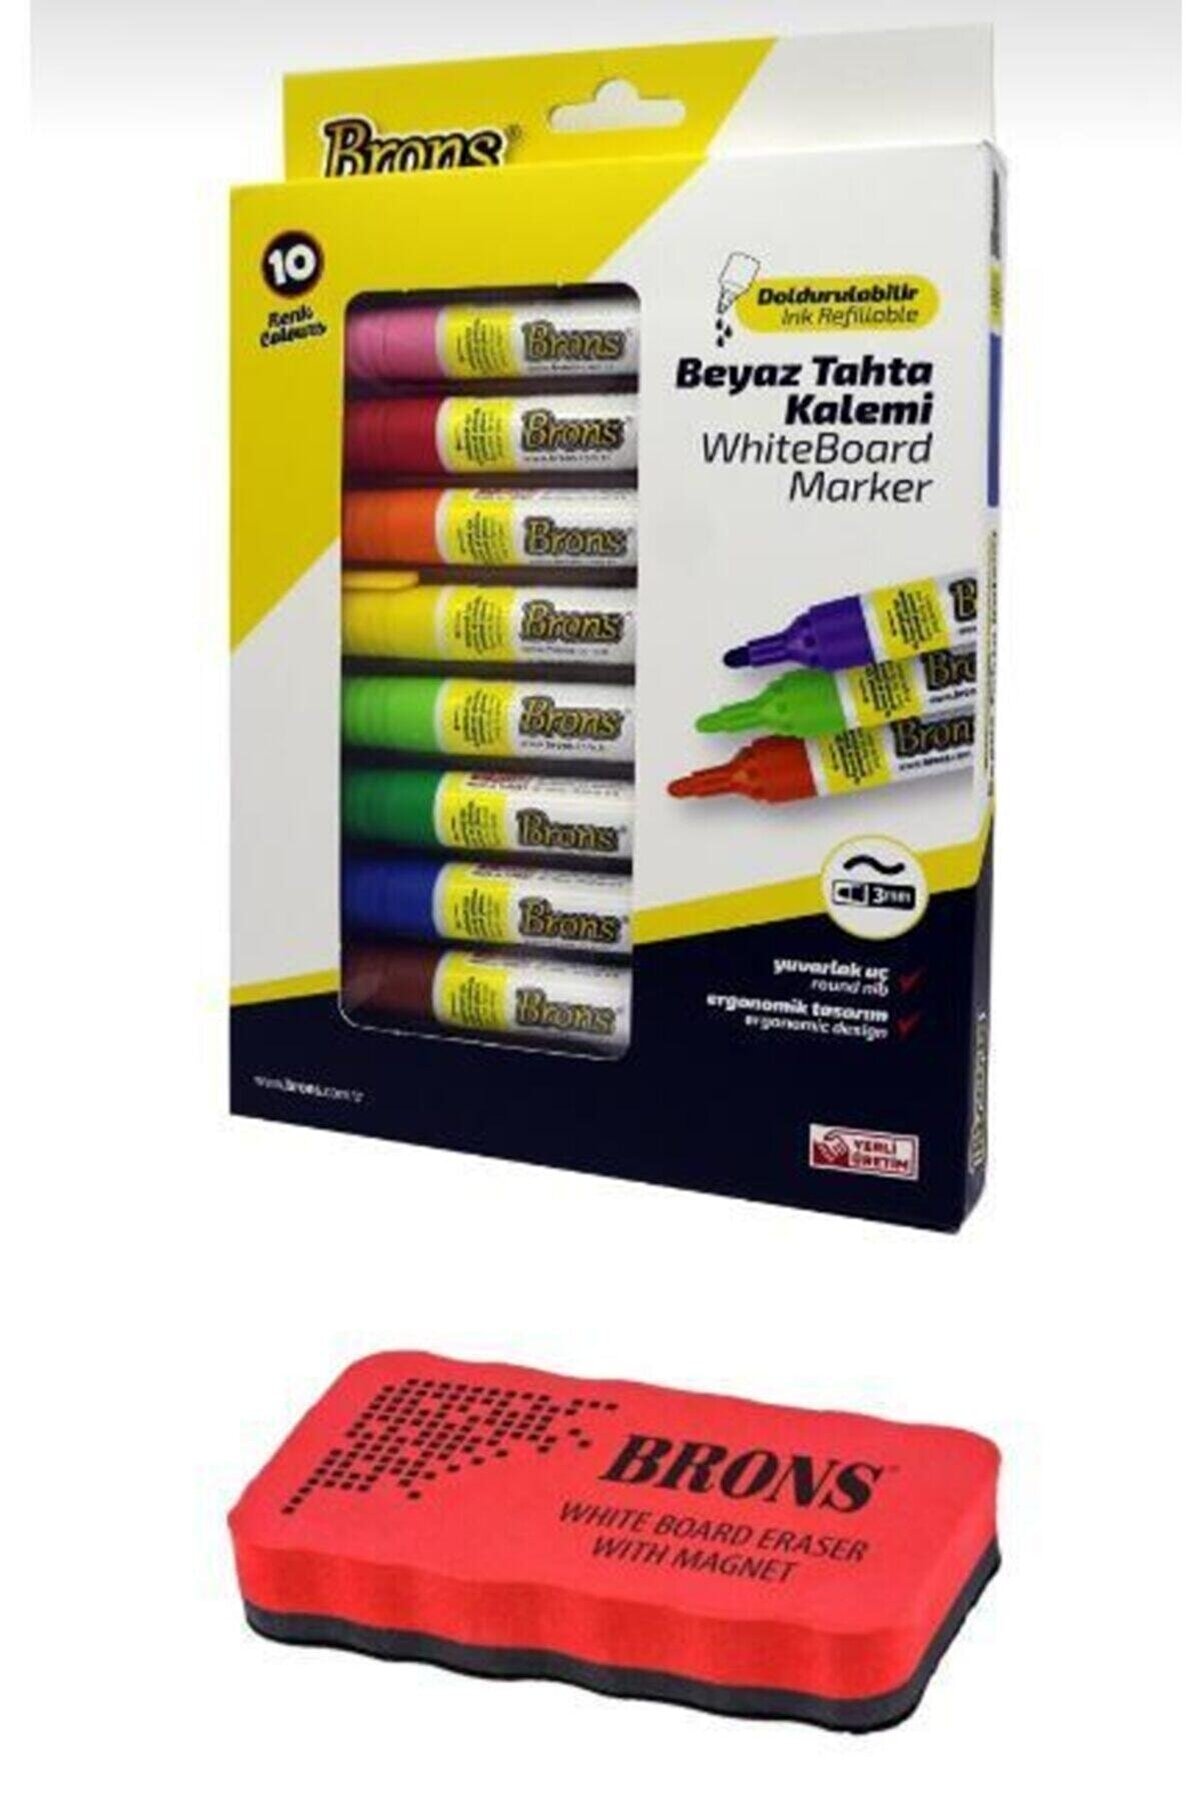 Brons Whiteboard Marker Doldurulabilir Beyaz Tahta Kalemi Seti 10 Renk